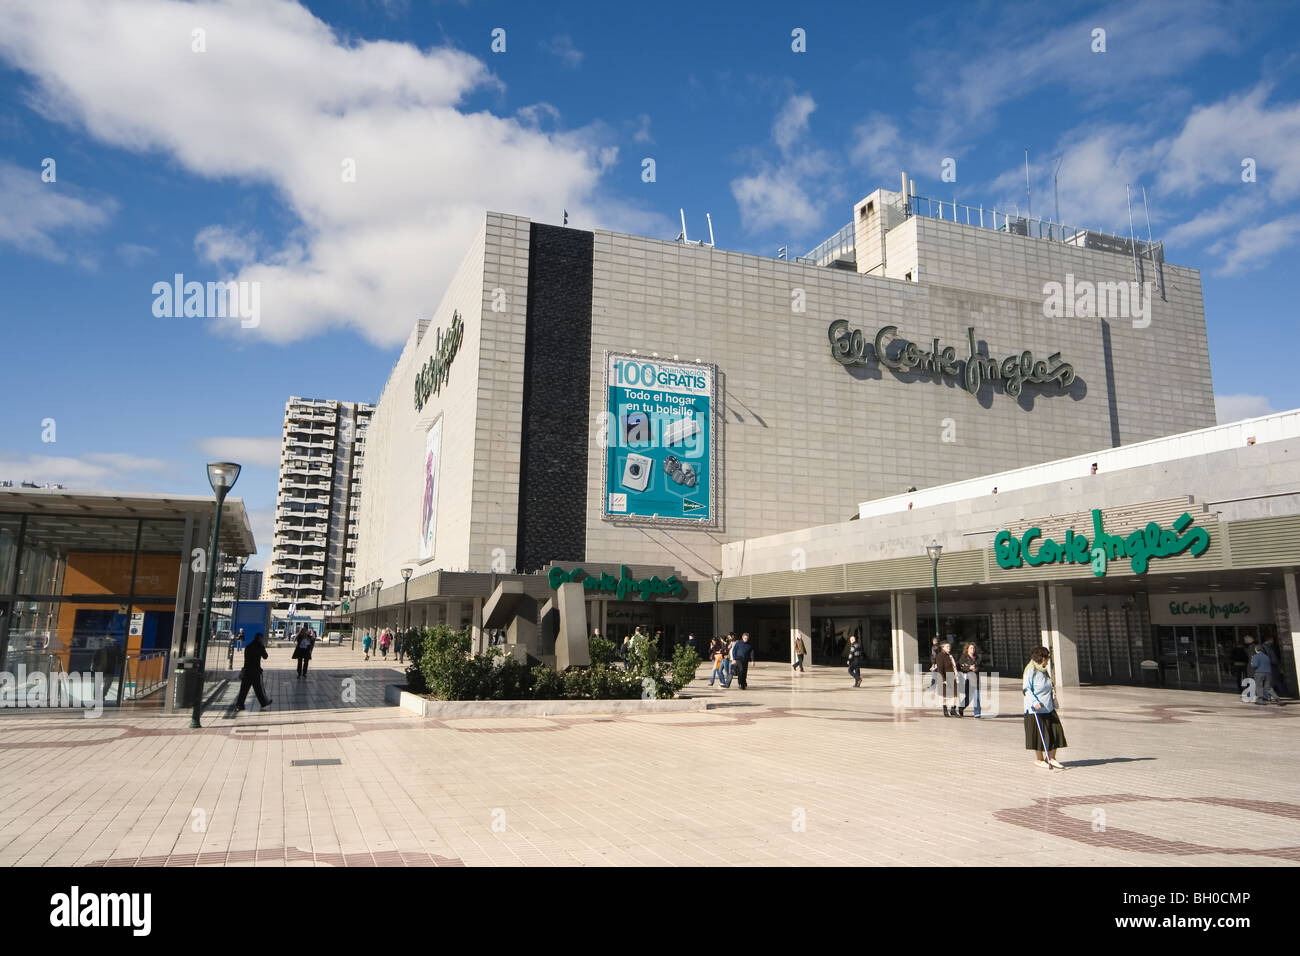 El Corte Ingles department store Malaga,Costa del Sol, Spain. Stock Photo